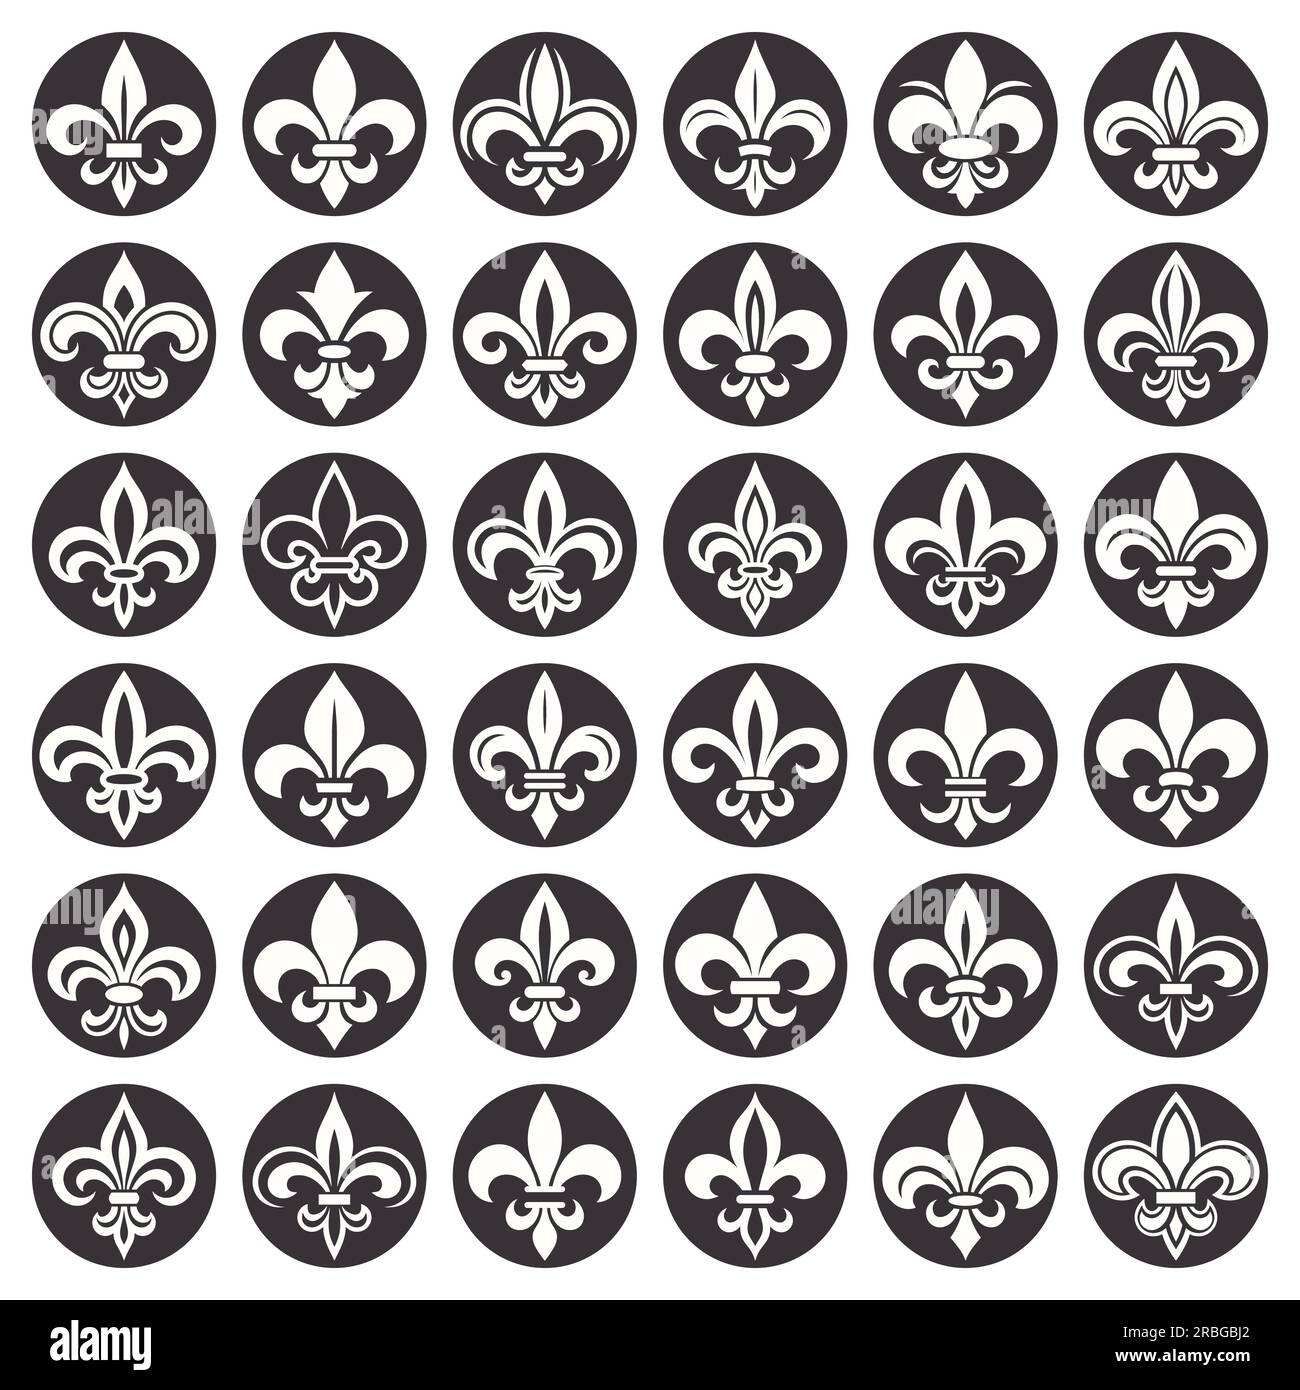 Vector Vintage bianco e nero Fleur De Lis Icon Set isolato. Giglio araldico, elemento di design retrò. Illustrazione vettoriale Illustrazione Vettoriale